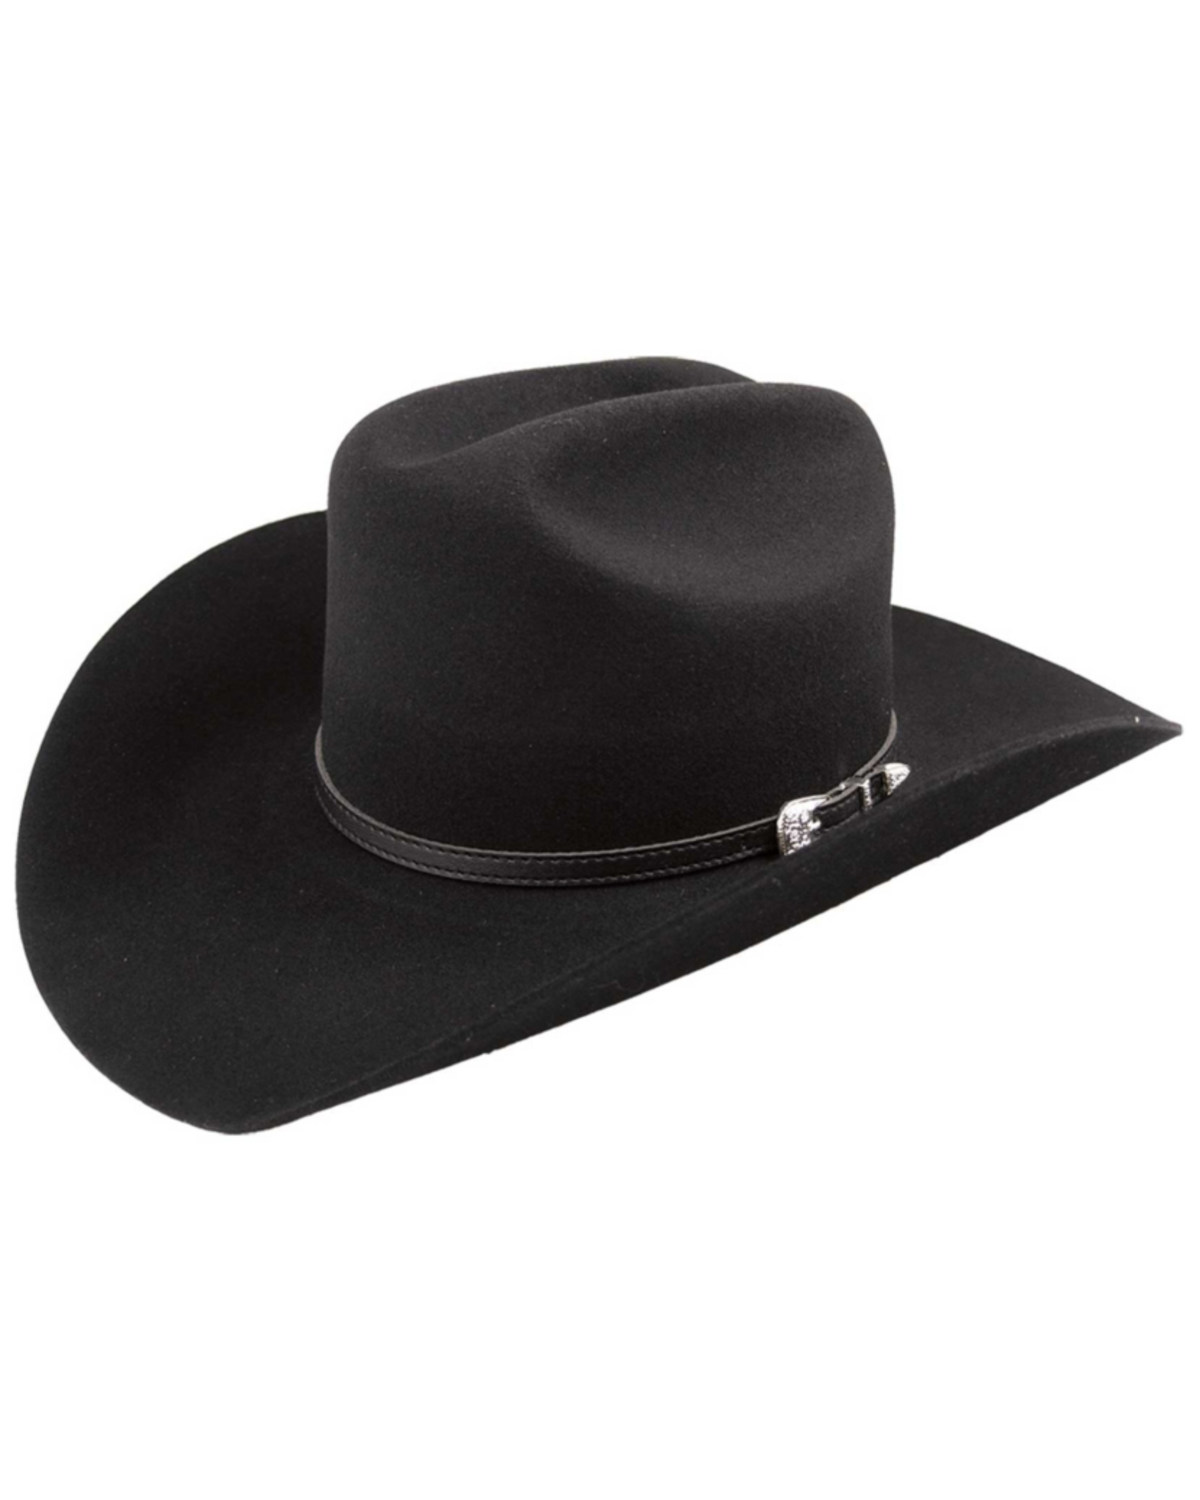 Bailey Wichita 2X Felt Cowboy Hat